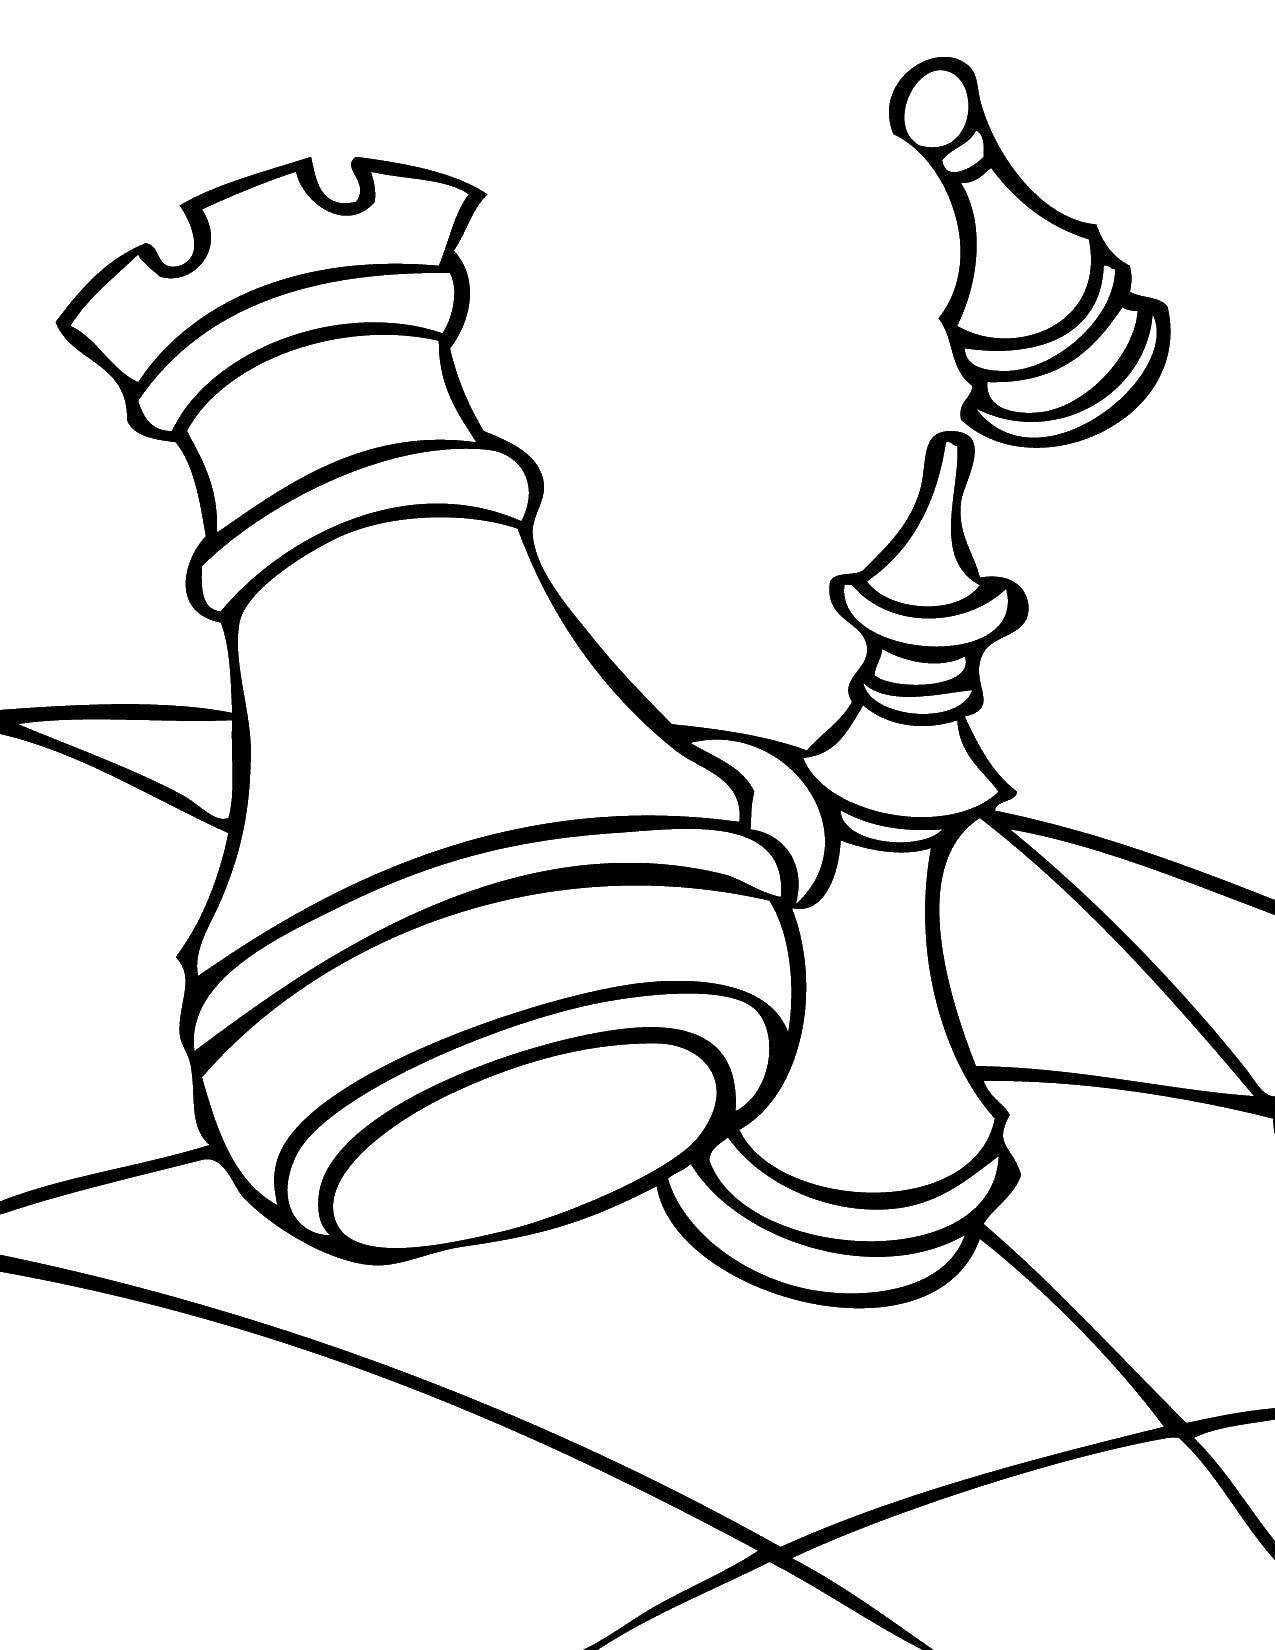 Раскраски Раскраска Шахматные фигуры Шахматы, скачать распечатать раскраски.